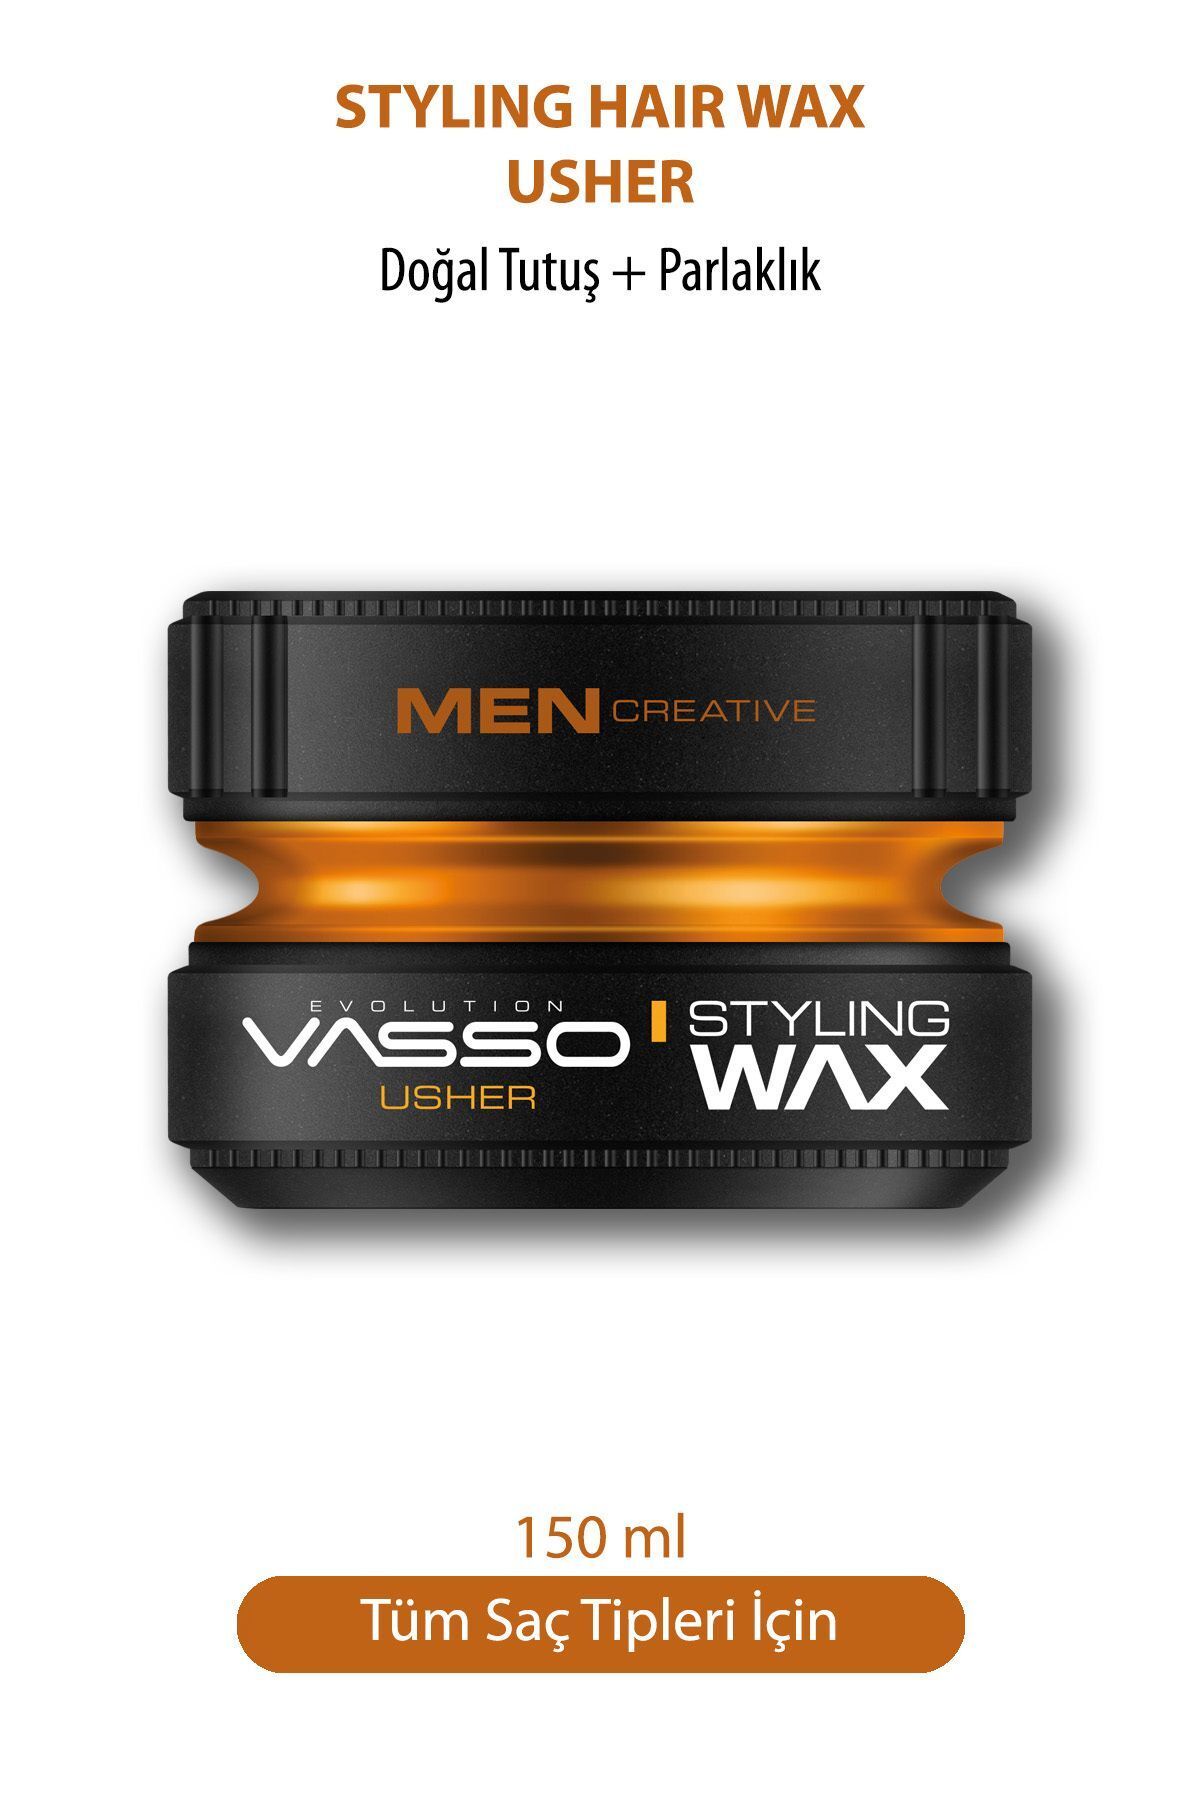 Vasso Men 24 Saat Tüm Saç Tipleri Için Parlaklık Ve Güçlü Tutuş Kazandıran Wax - Usher Pro Aqua 150 ml